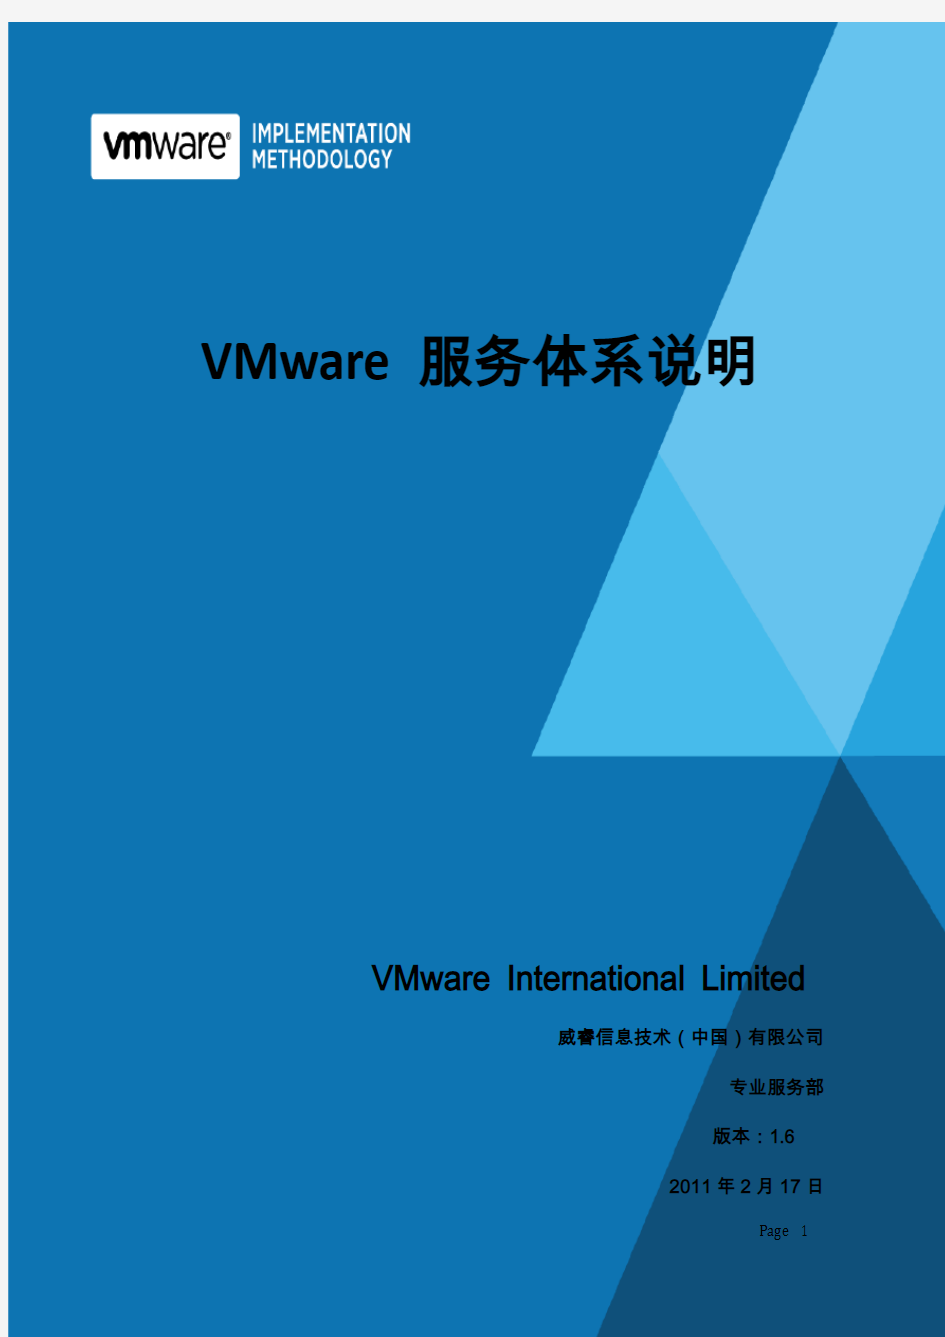 VMware服务体系说明- vSphere 简